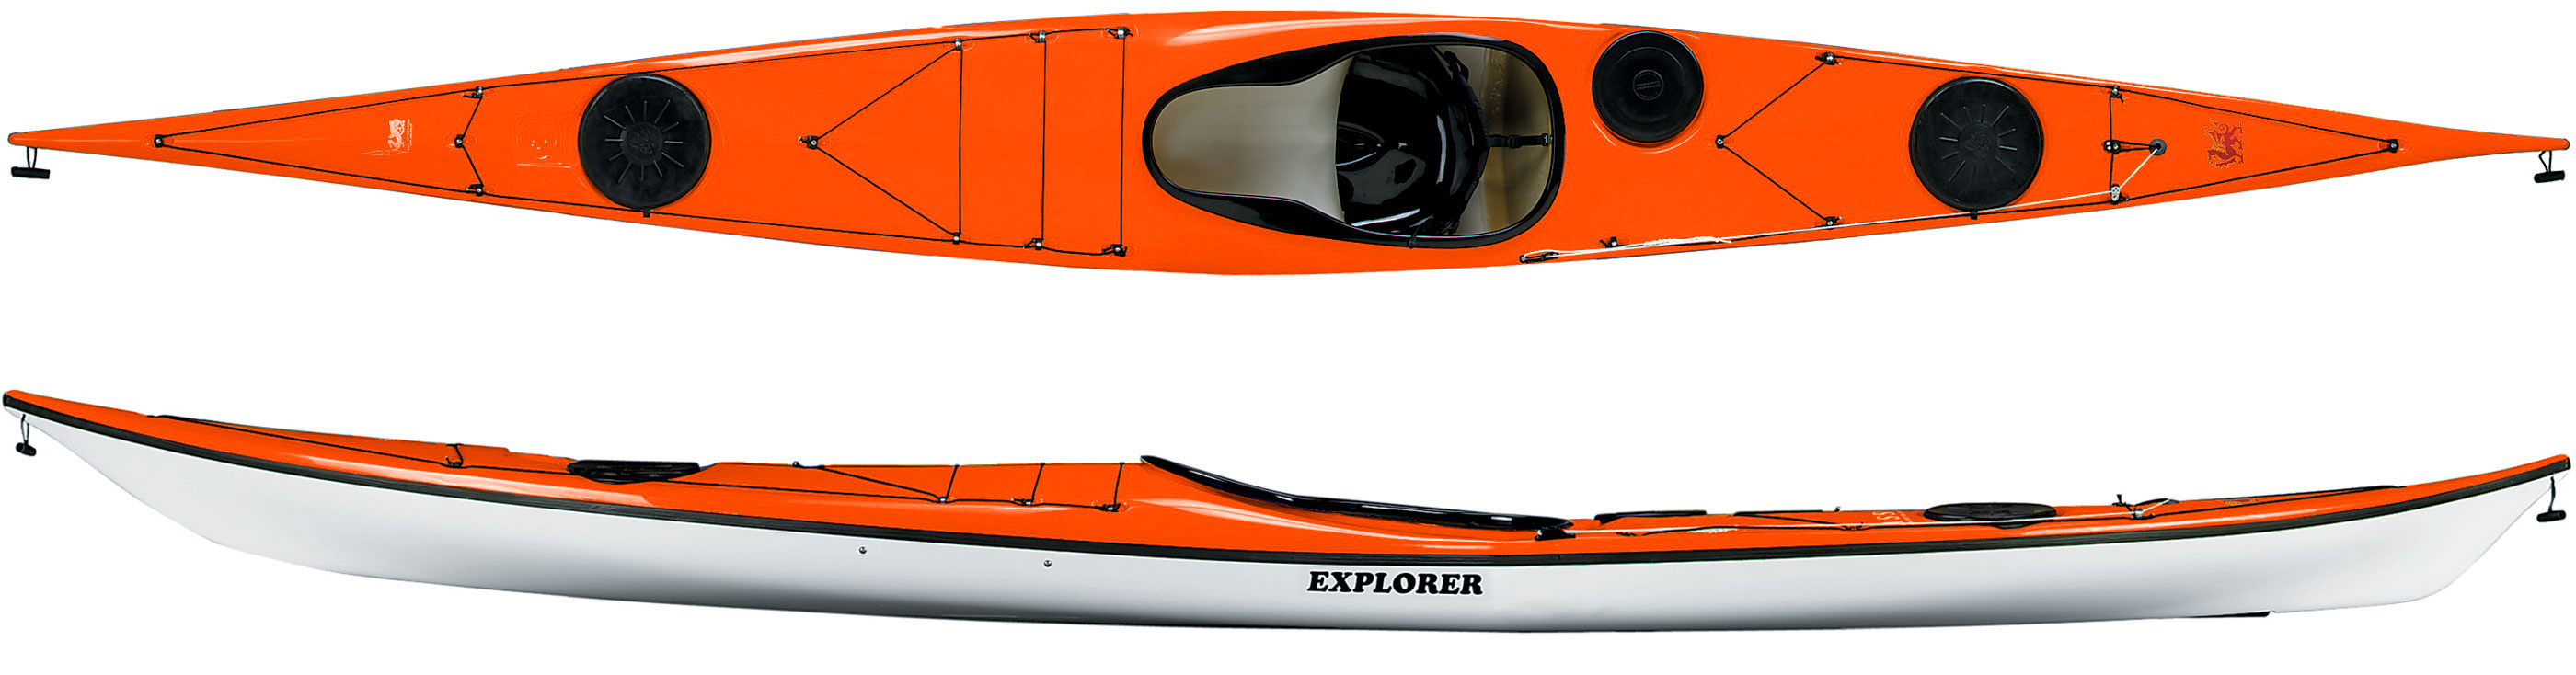 NDK explorer sea kayak